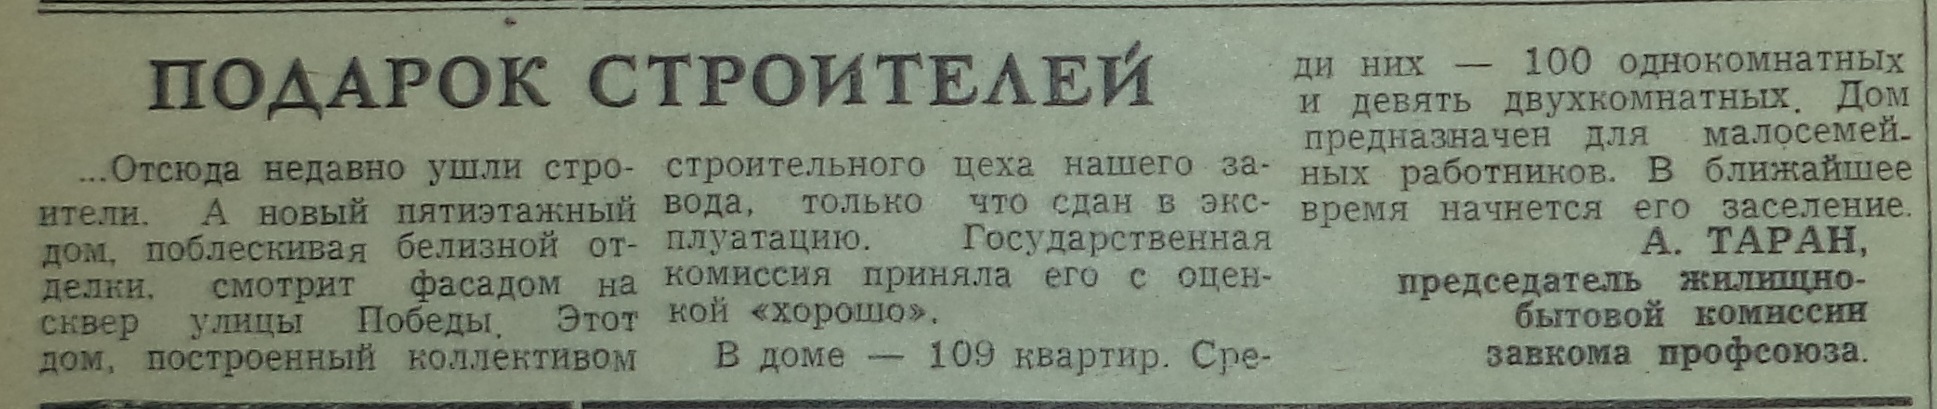 Славный-ФОТО-16-Ленинское Знамя-1975-13 января